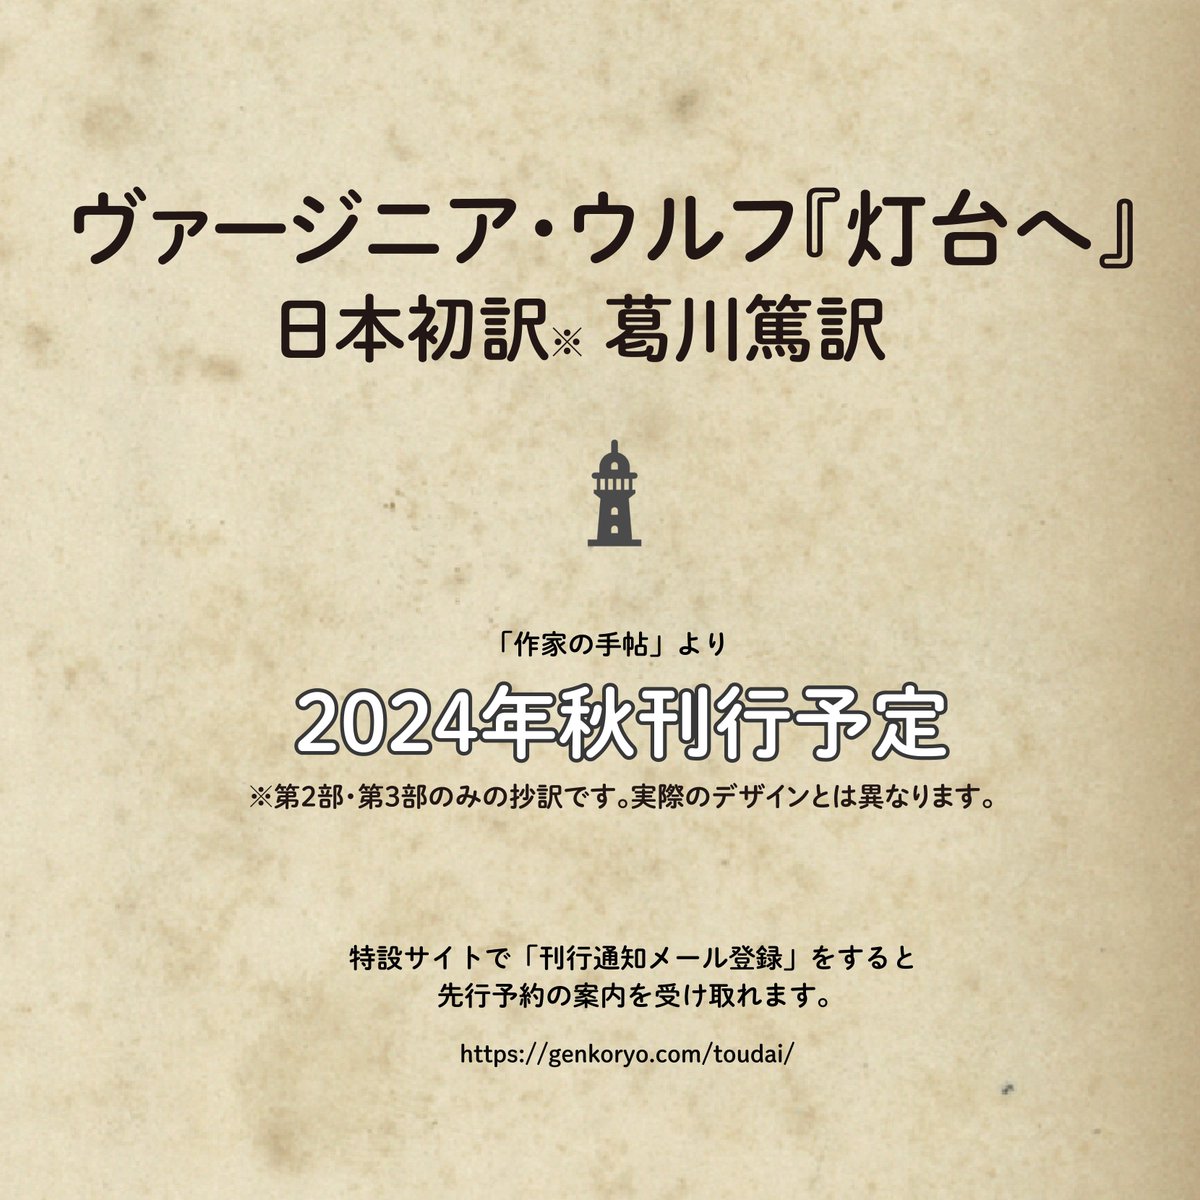 今秋、ヴァージニア・ウルフ『灯台へ』の日本初訳の復刊書を刊行します📚訳者は葛川篤。昭和のモダニズム文学を代表する伊藤整や春山行夫らに才能を認められた人物です。当時の雑誌連載を新デザインで書籍化し、歴史に埋もれた訳業に光を当てる試み。ぜひ、ご期待ください。genkoryo.com/toudai